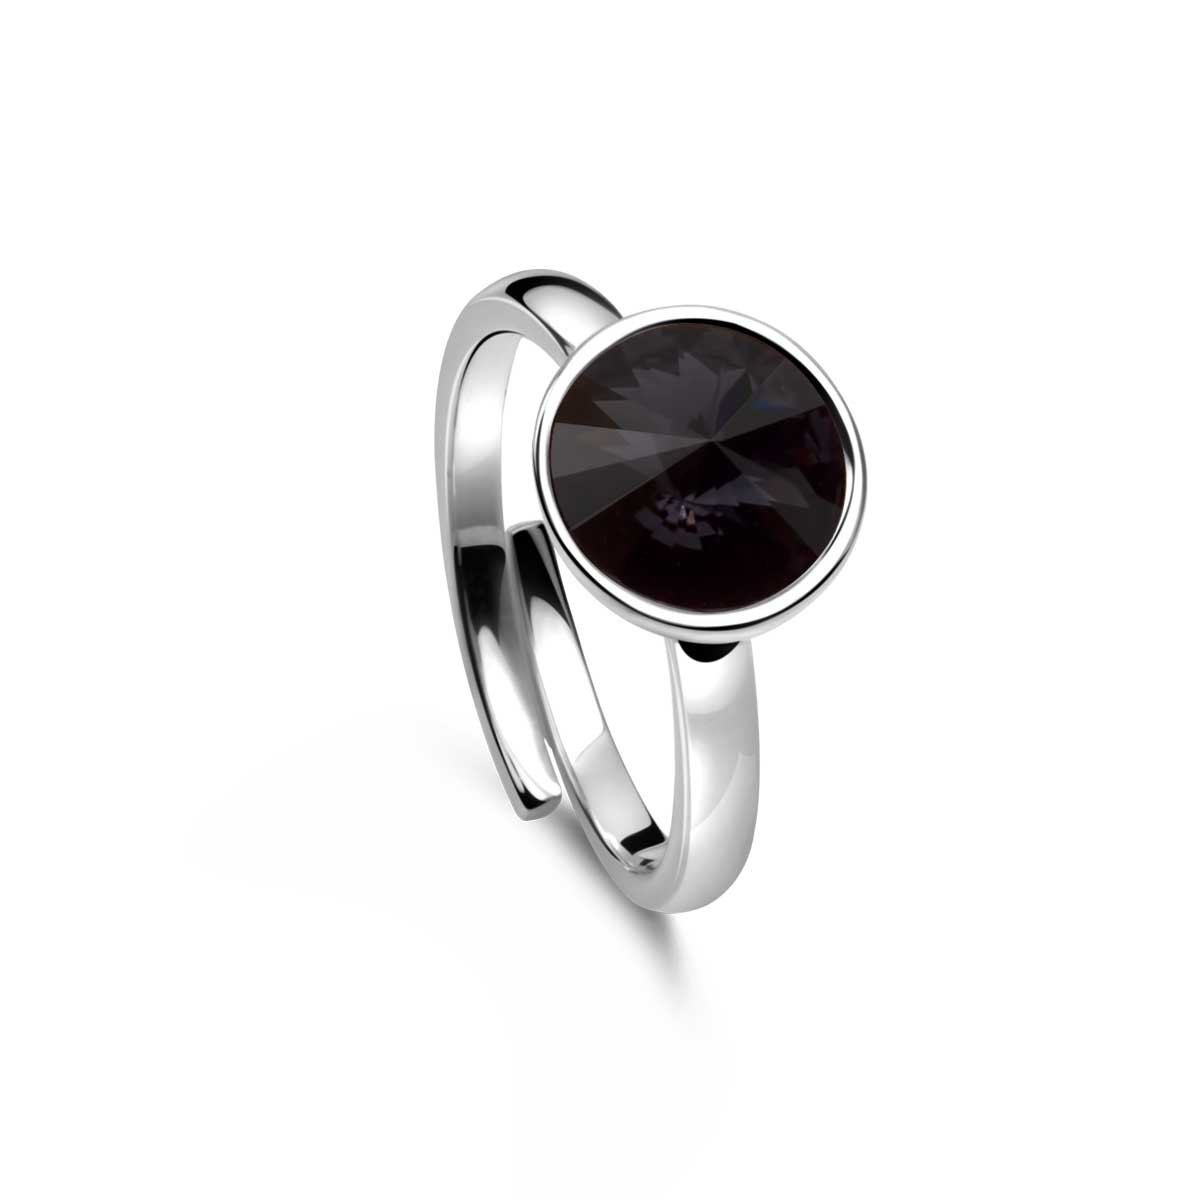 Ring 925 Silber schwarzer Zirkonia verstellbar#oberflache_silber